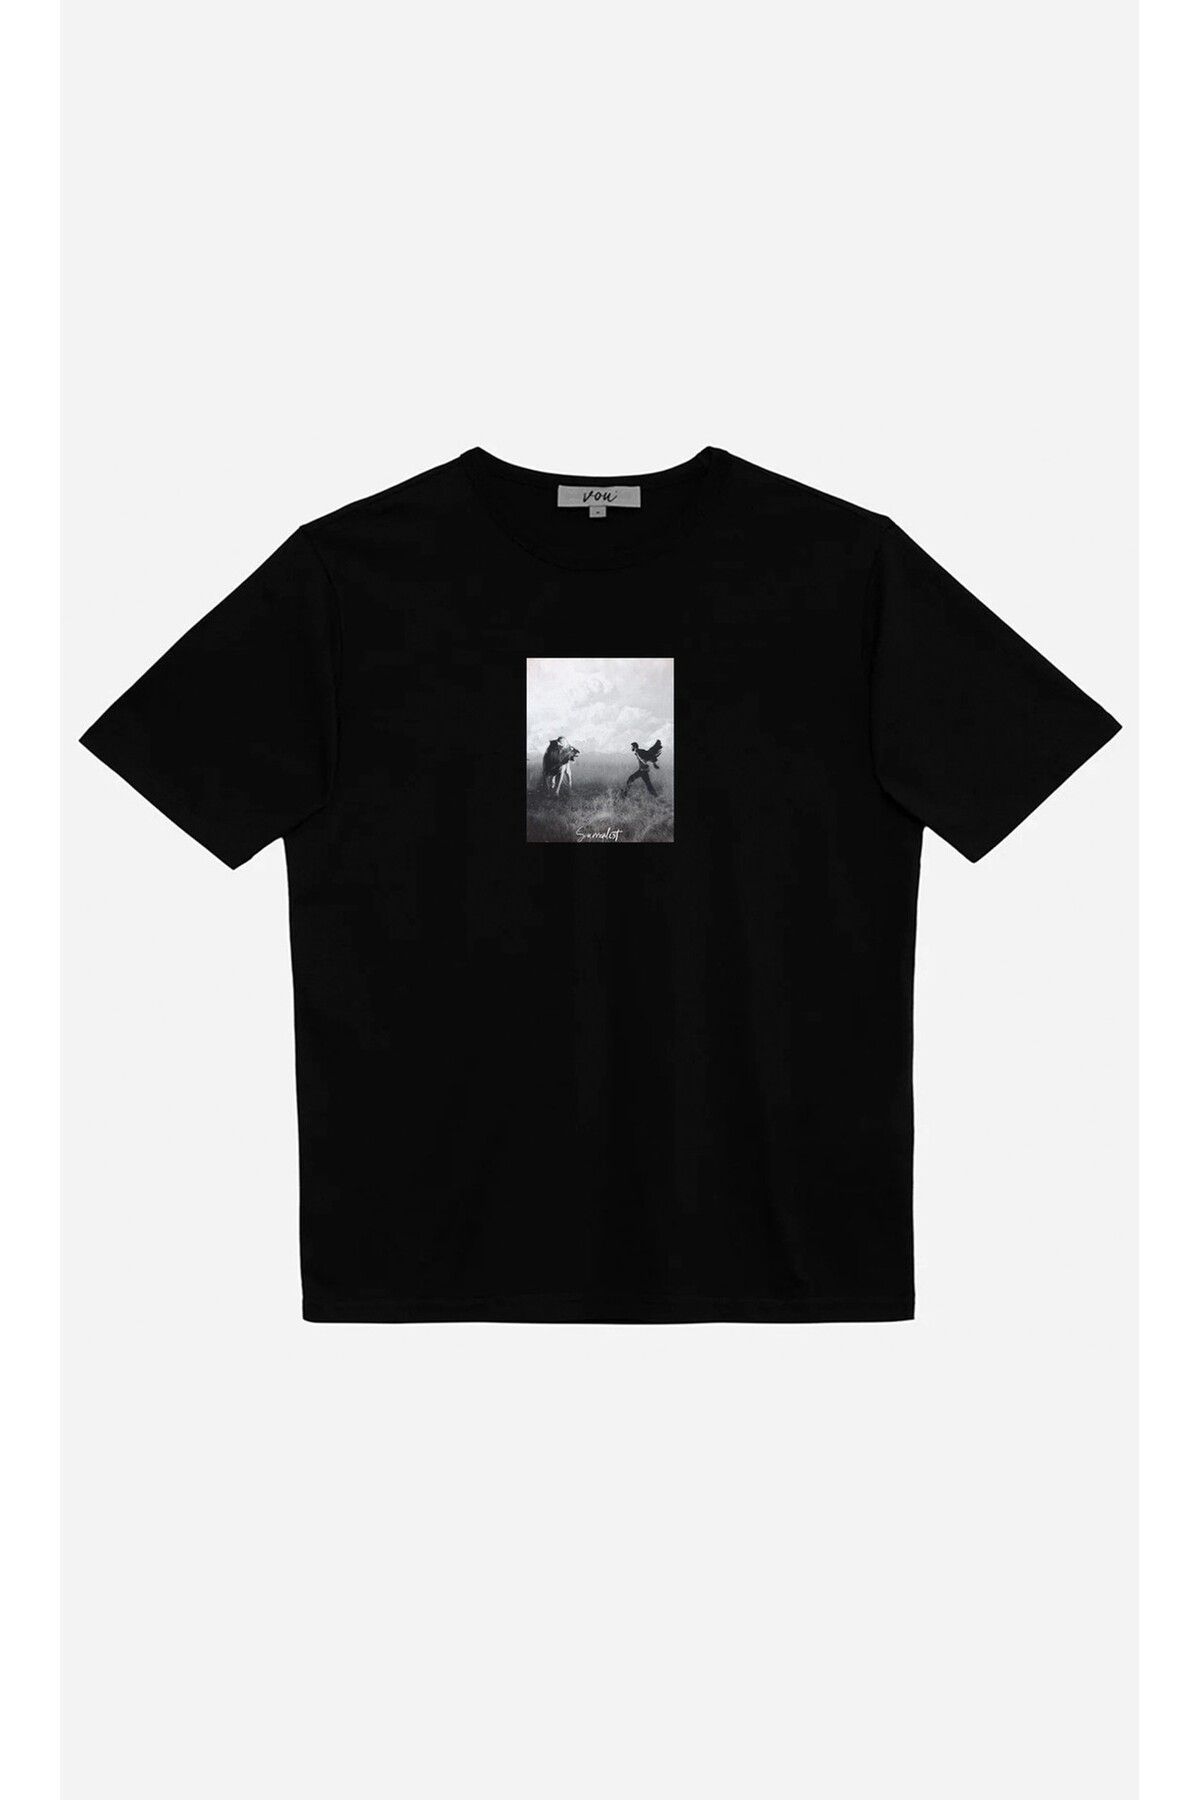 VOU 1055- Surrealist Oversize Unisex T-Shirt